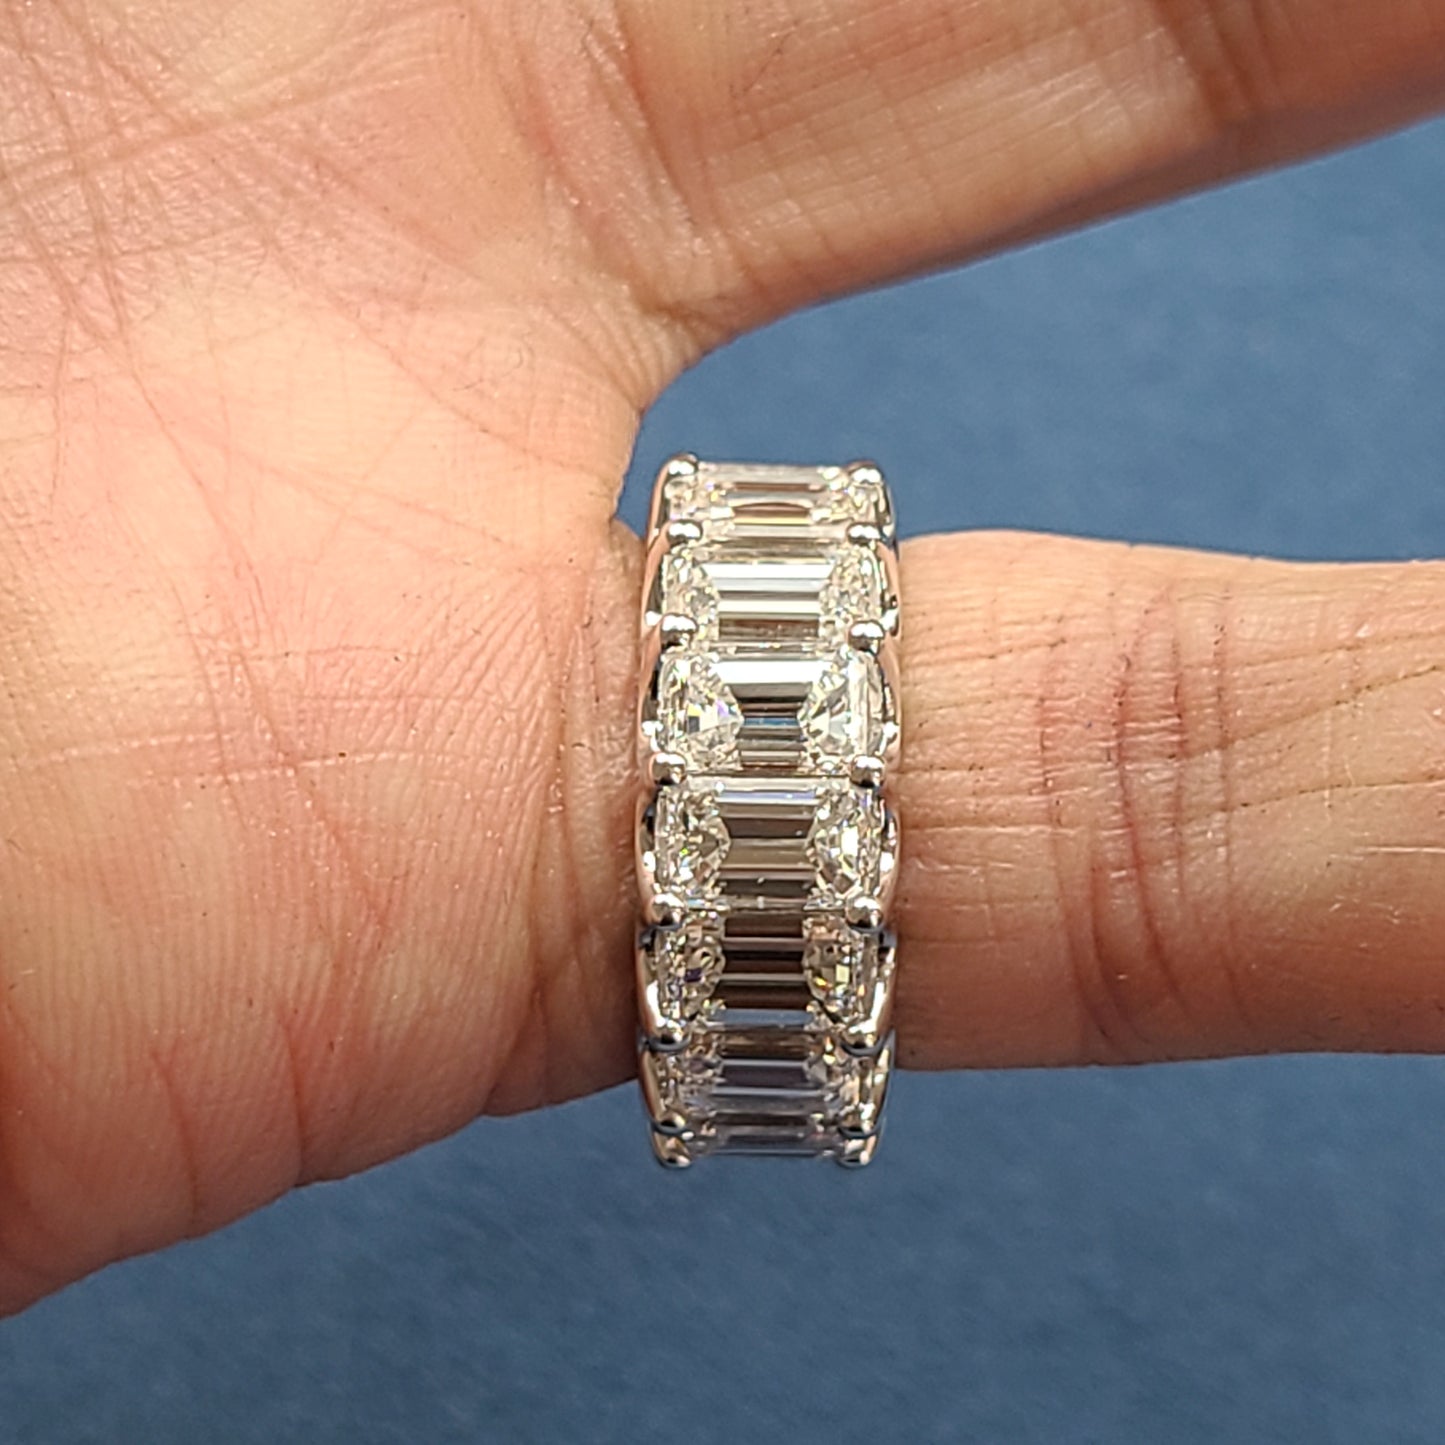 12ct Full Eternity luxury Emerald Cut Diamond Width 9mm Ring / Lab Grown Emerald Cut Diamond Wedding Ring / Anniversary gift